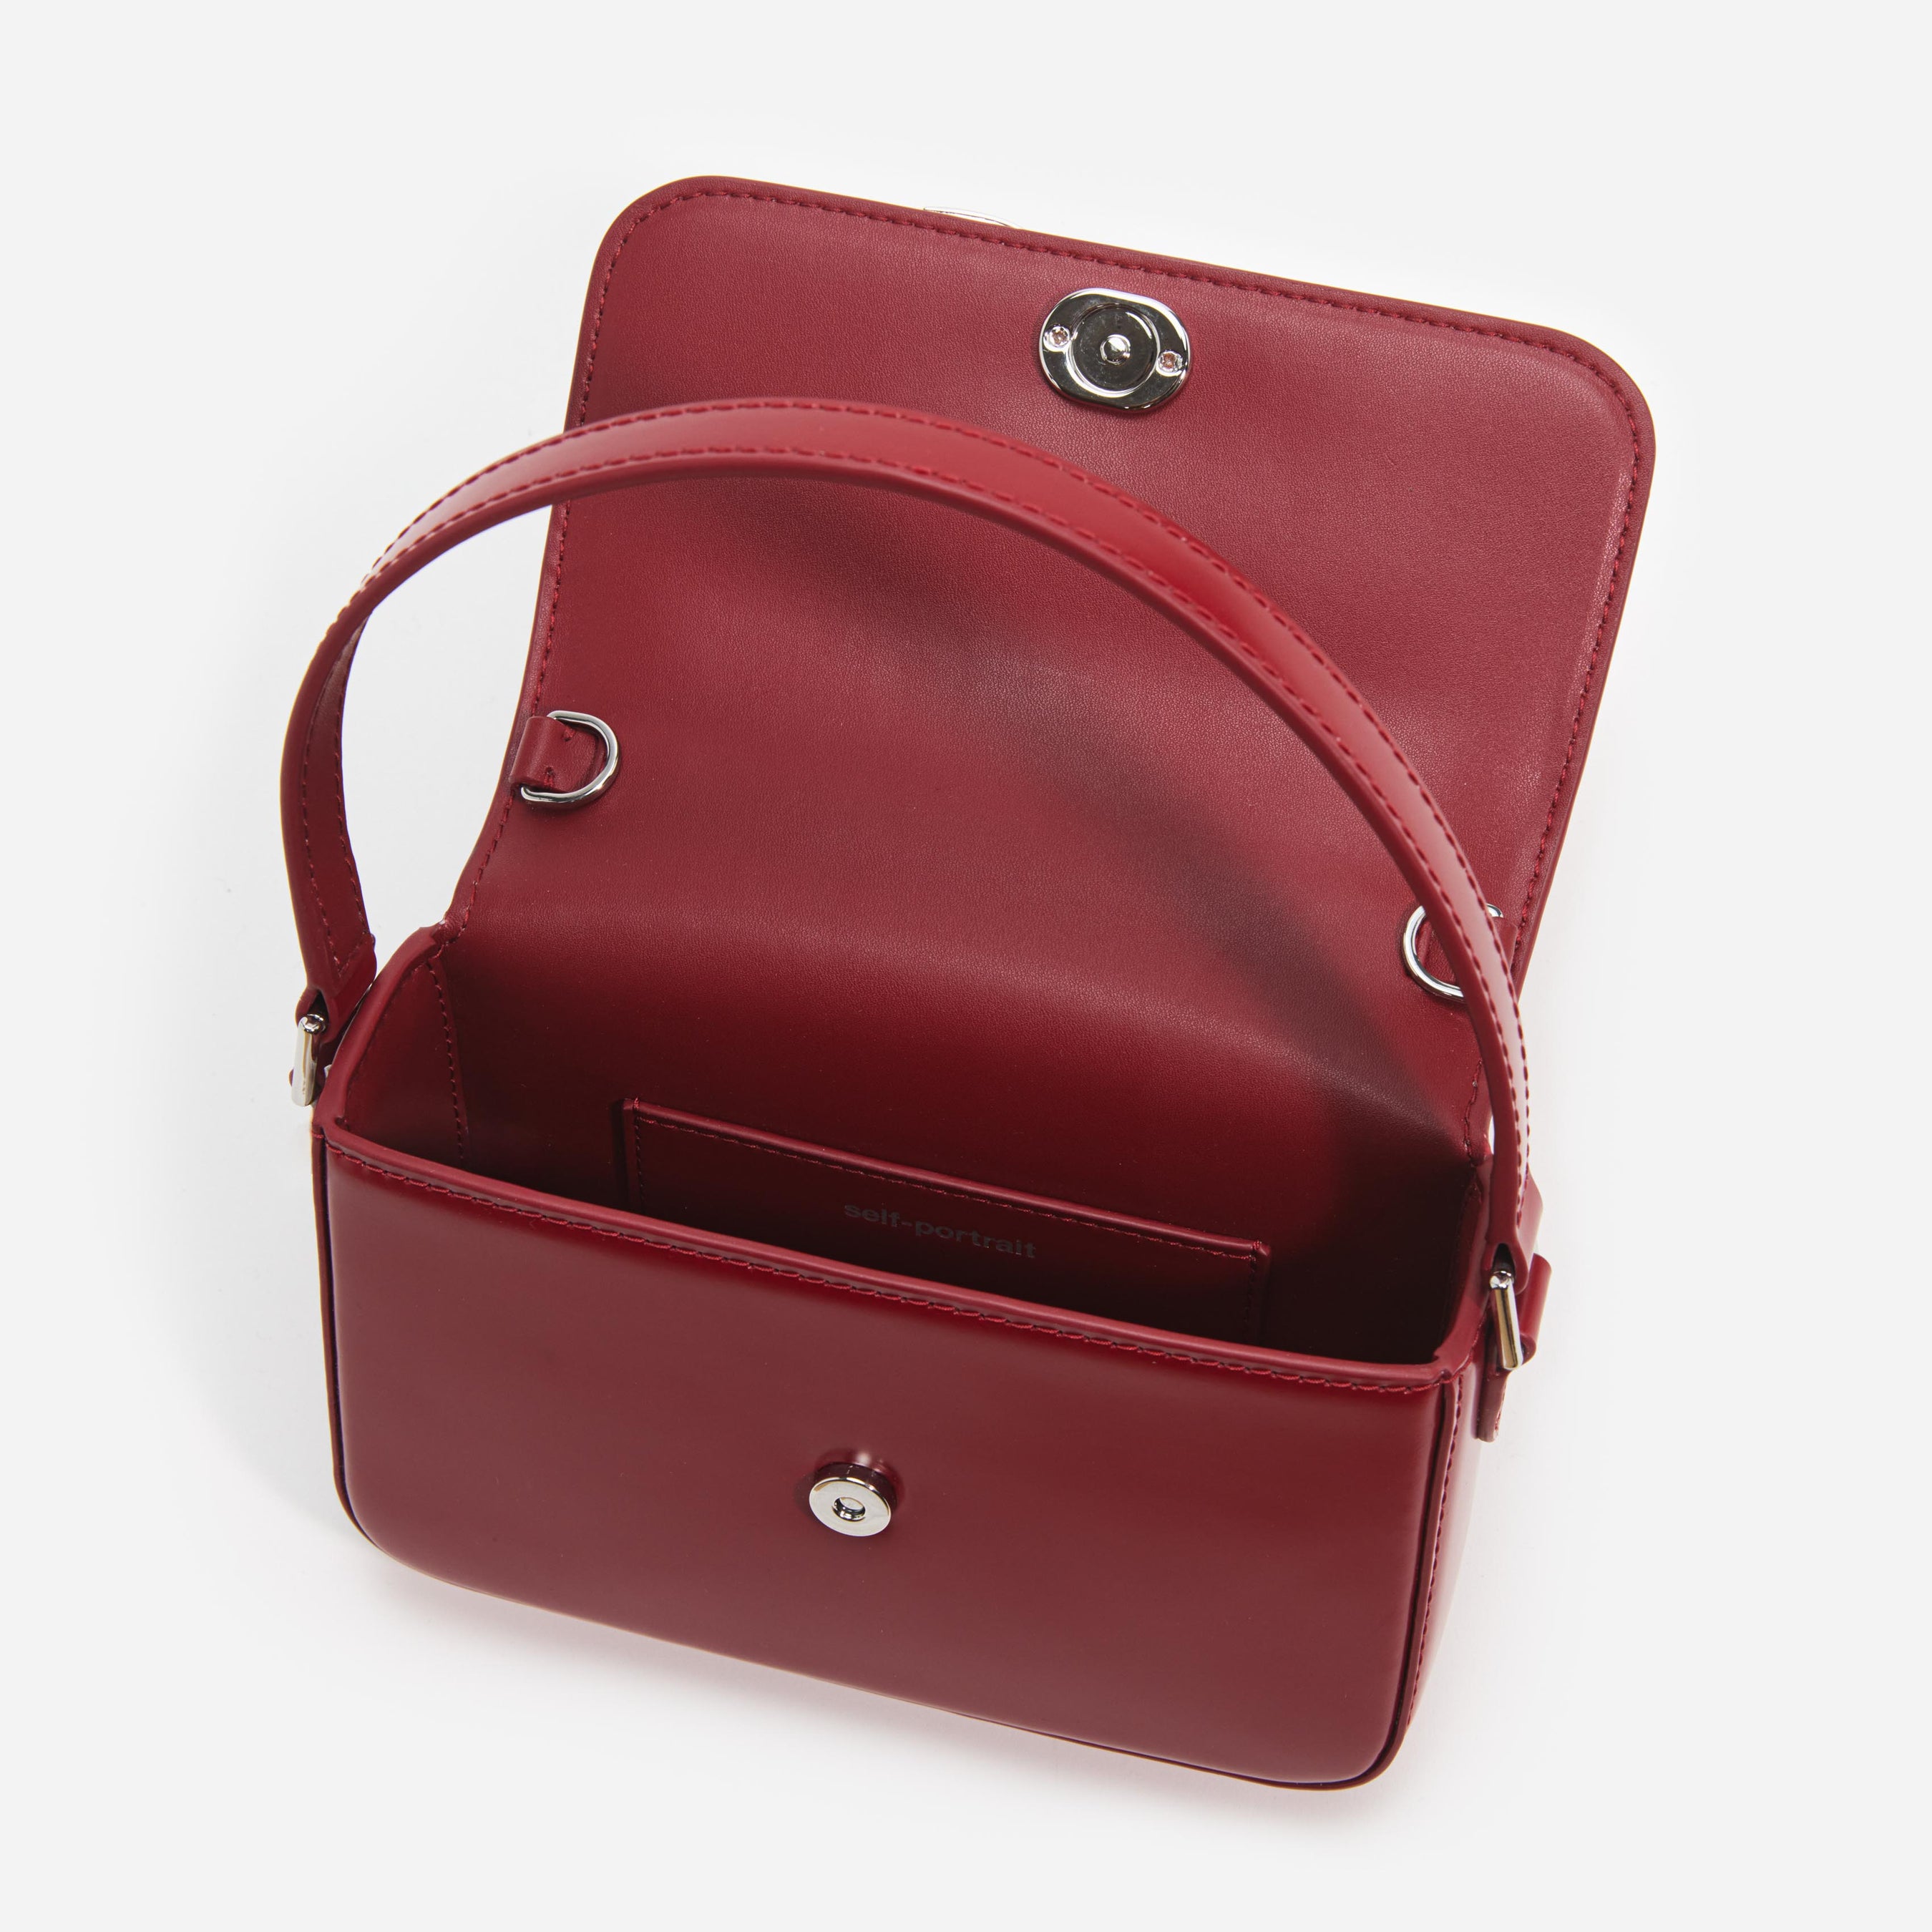 Burgundy Leather Micro Bag